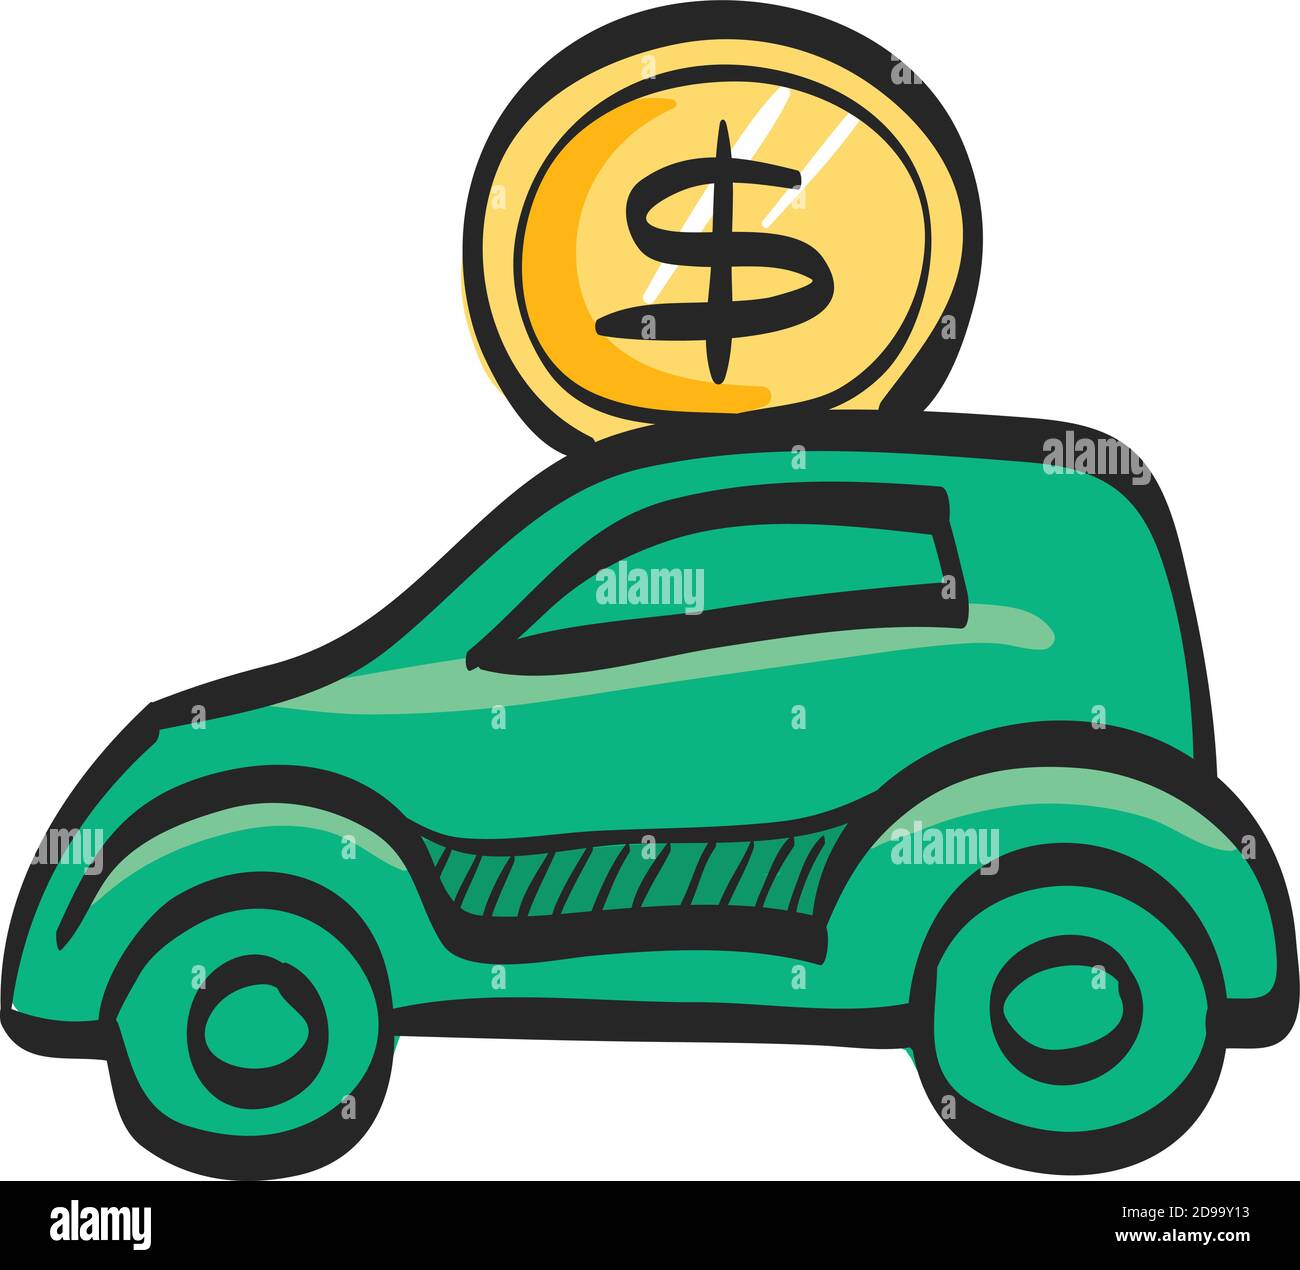 Auto Sparschwein Symbol in Farbe Zeichnung. Speichern Kinder Bankauto  Automobil Stock-Vektorgrafik - Alamy